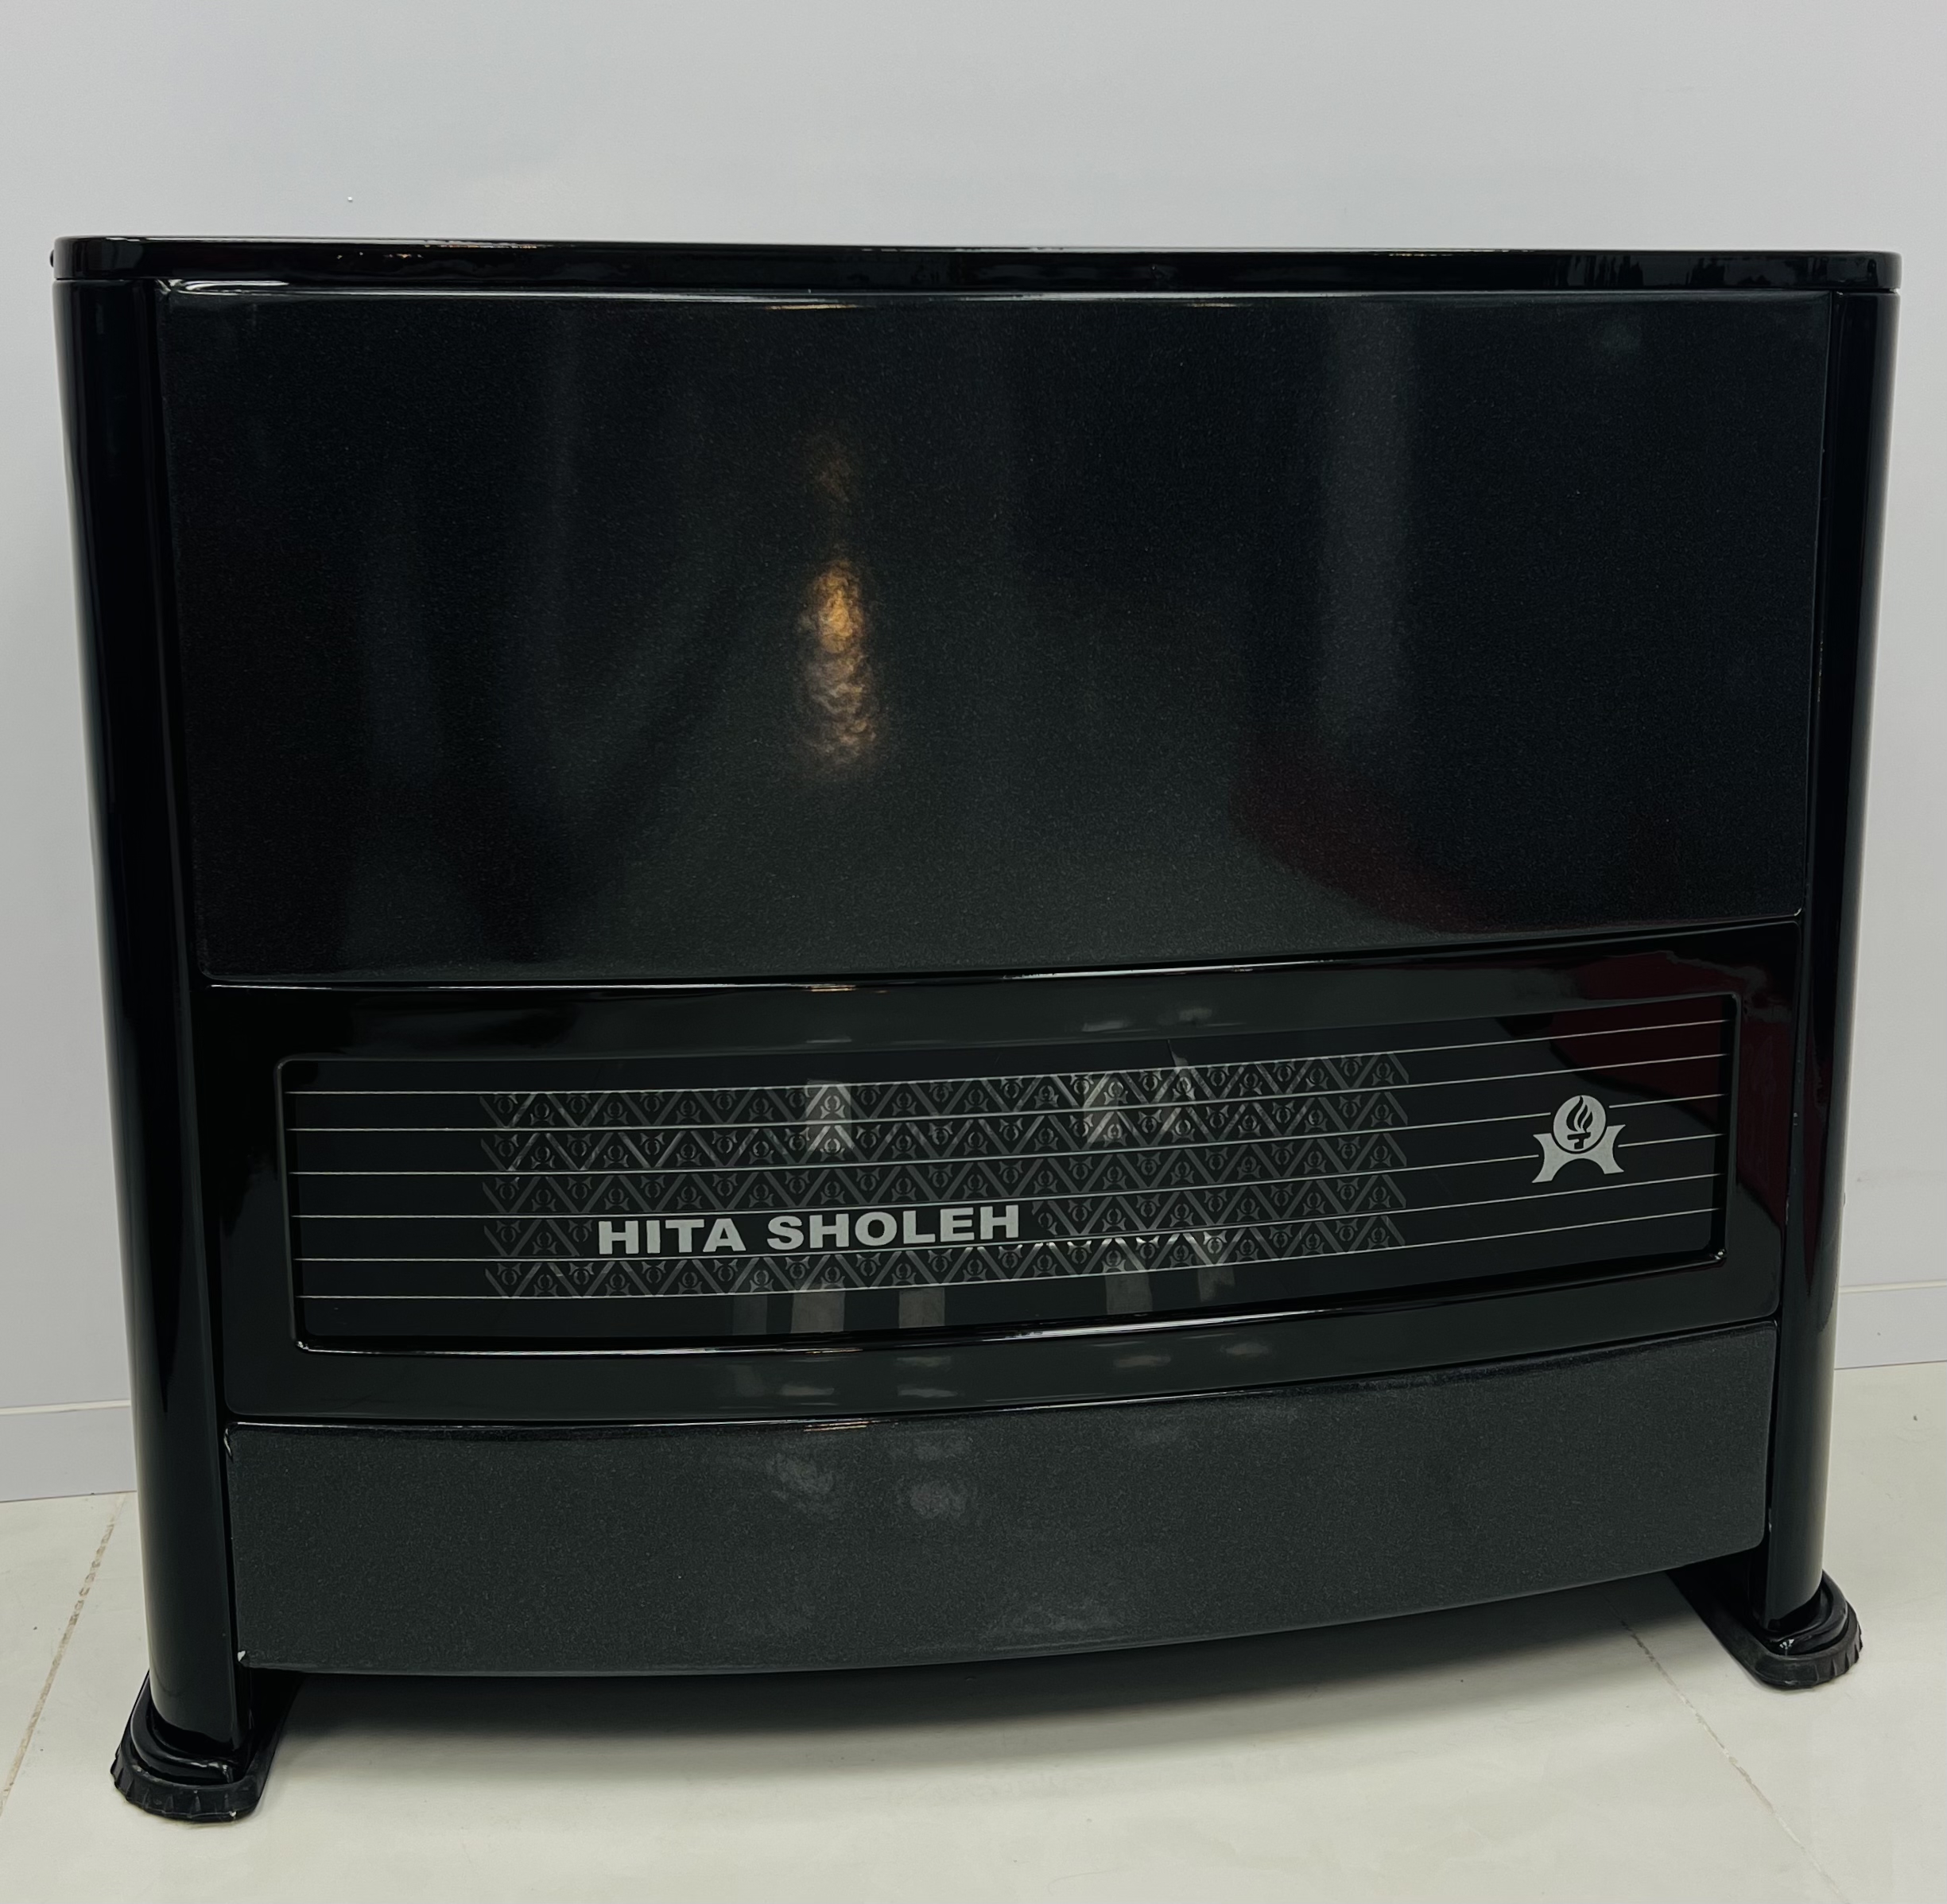 بخاری گازی هیتا شعله مدل فیروزه ساده HTA120